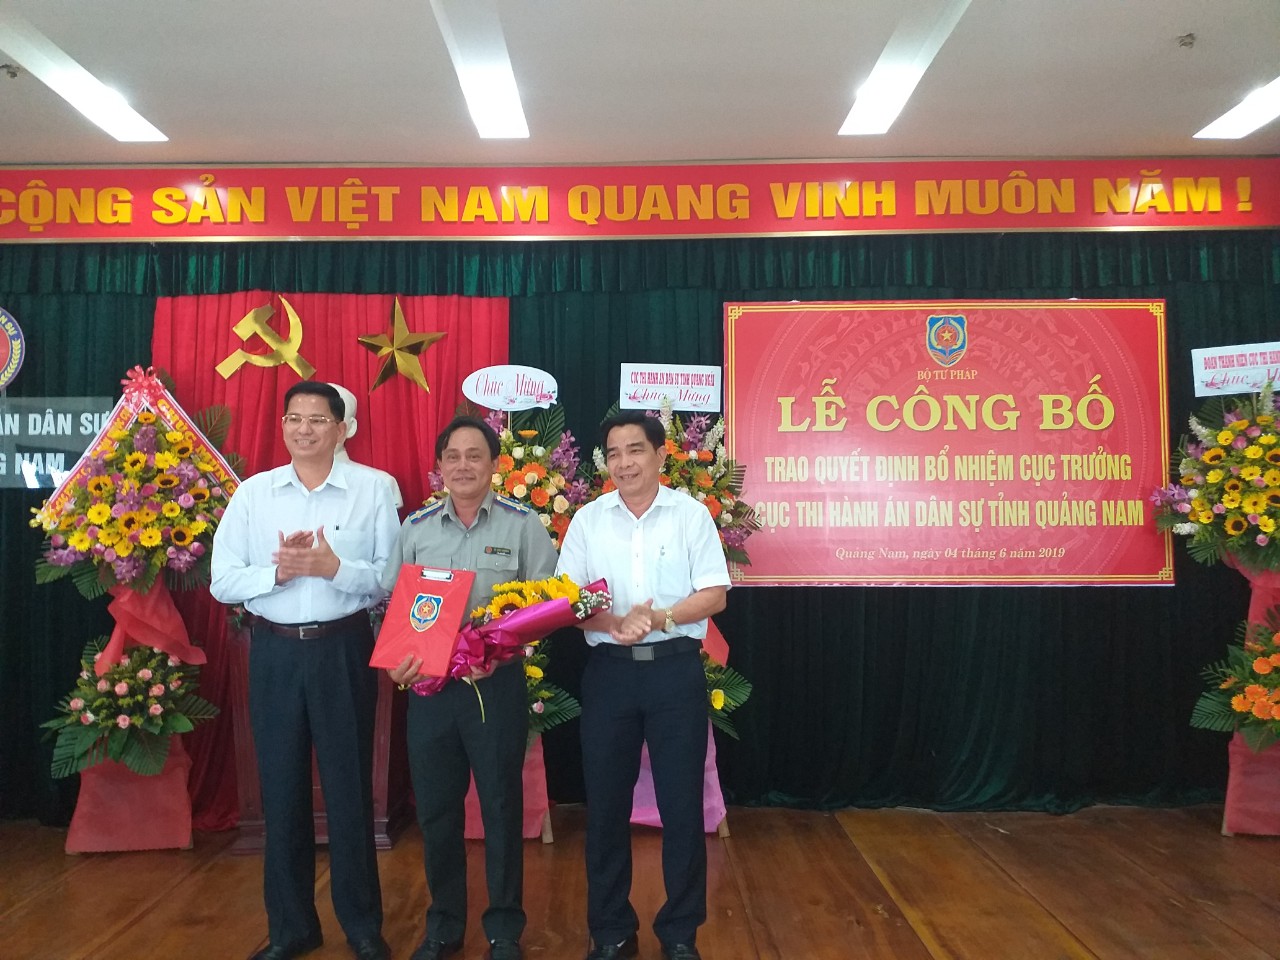 Bộ Tư pháp công bố Quyết định bổ nhiệm Cục trưởng Cục Thi hành án dân sự tỉnh Quảng Nam